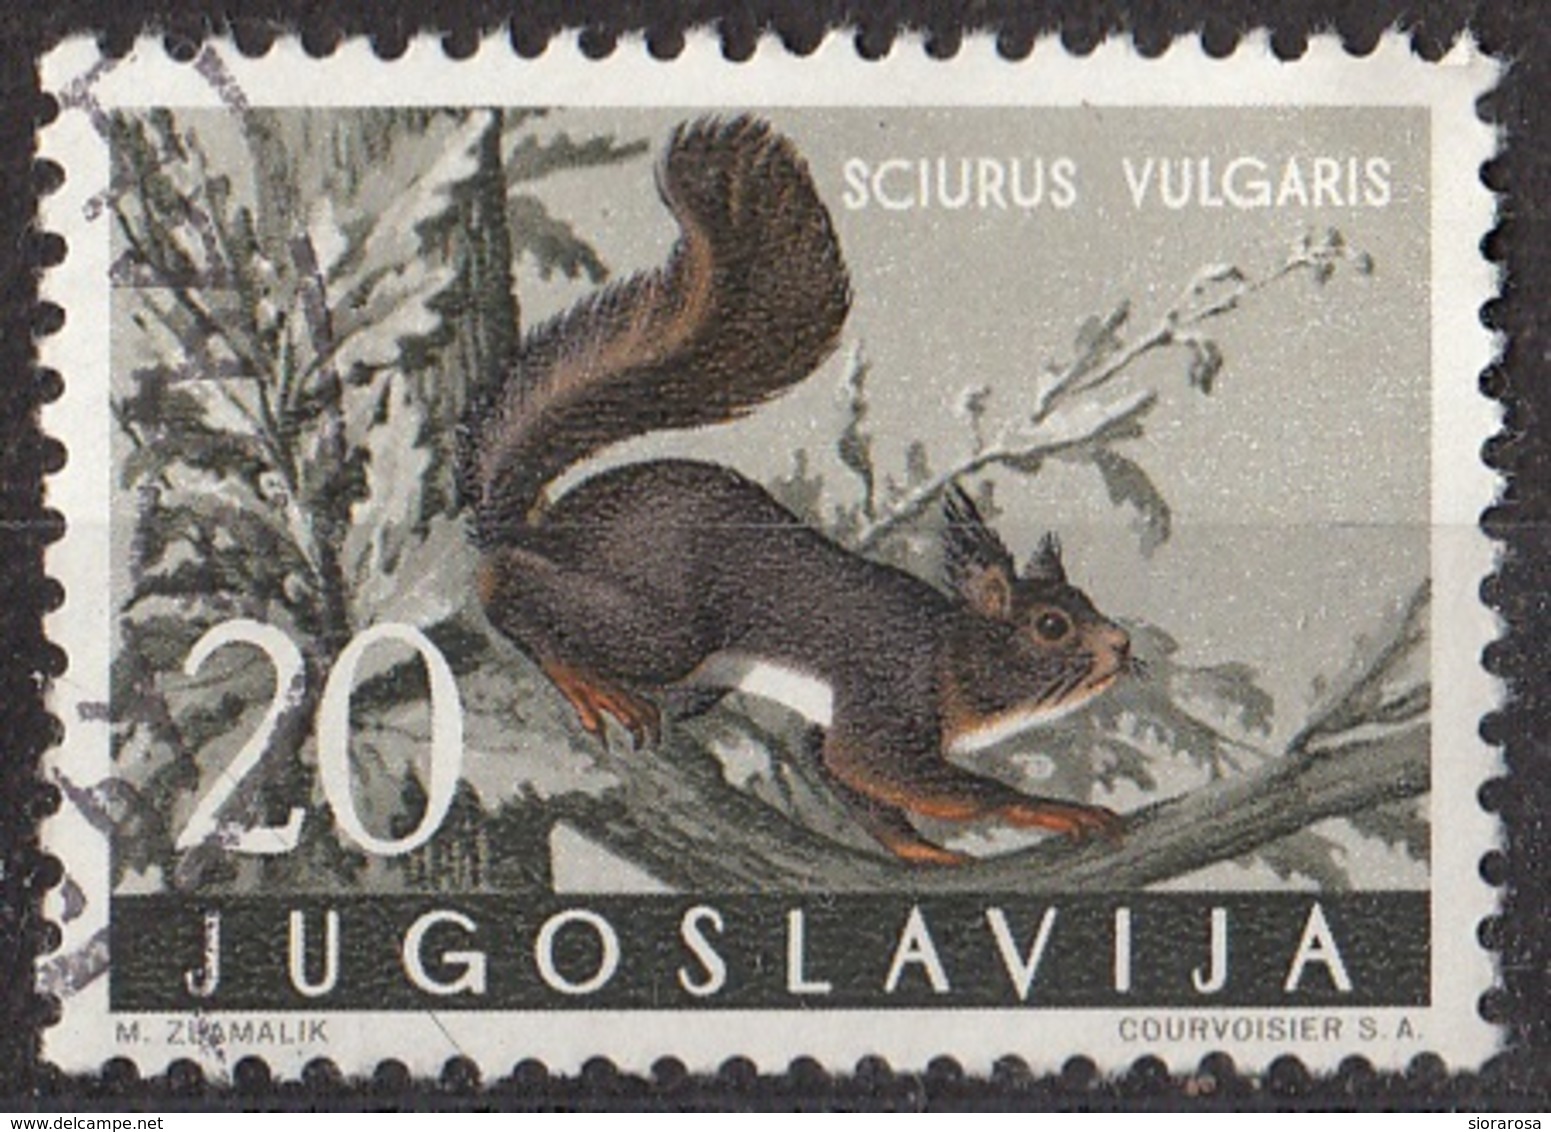 Jugoslavia 1960 Sc. 573 Roditori : Scoiattolo Comune - Sciurus Vulgaris - Used Yugoslavia - Rodents